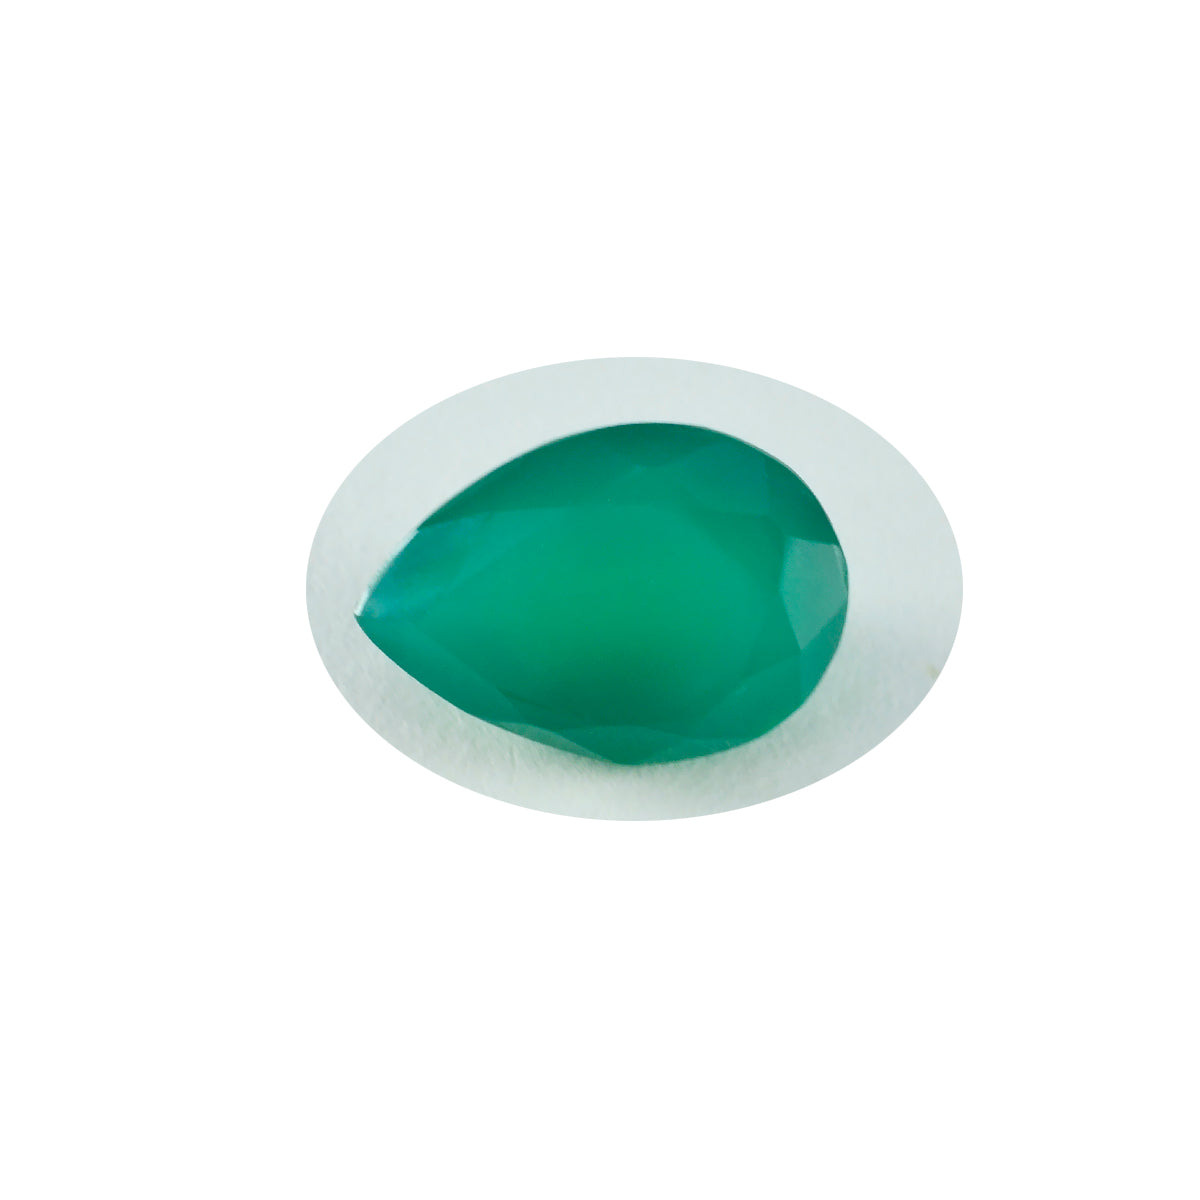 riyogems 1 pezzo di diaspro verde naturale sfaccettato 12x16 mm a forma di pera, qualità A1, pietra preziosa sciolta